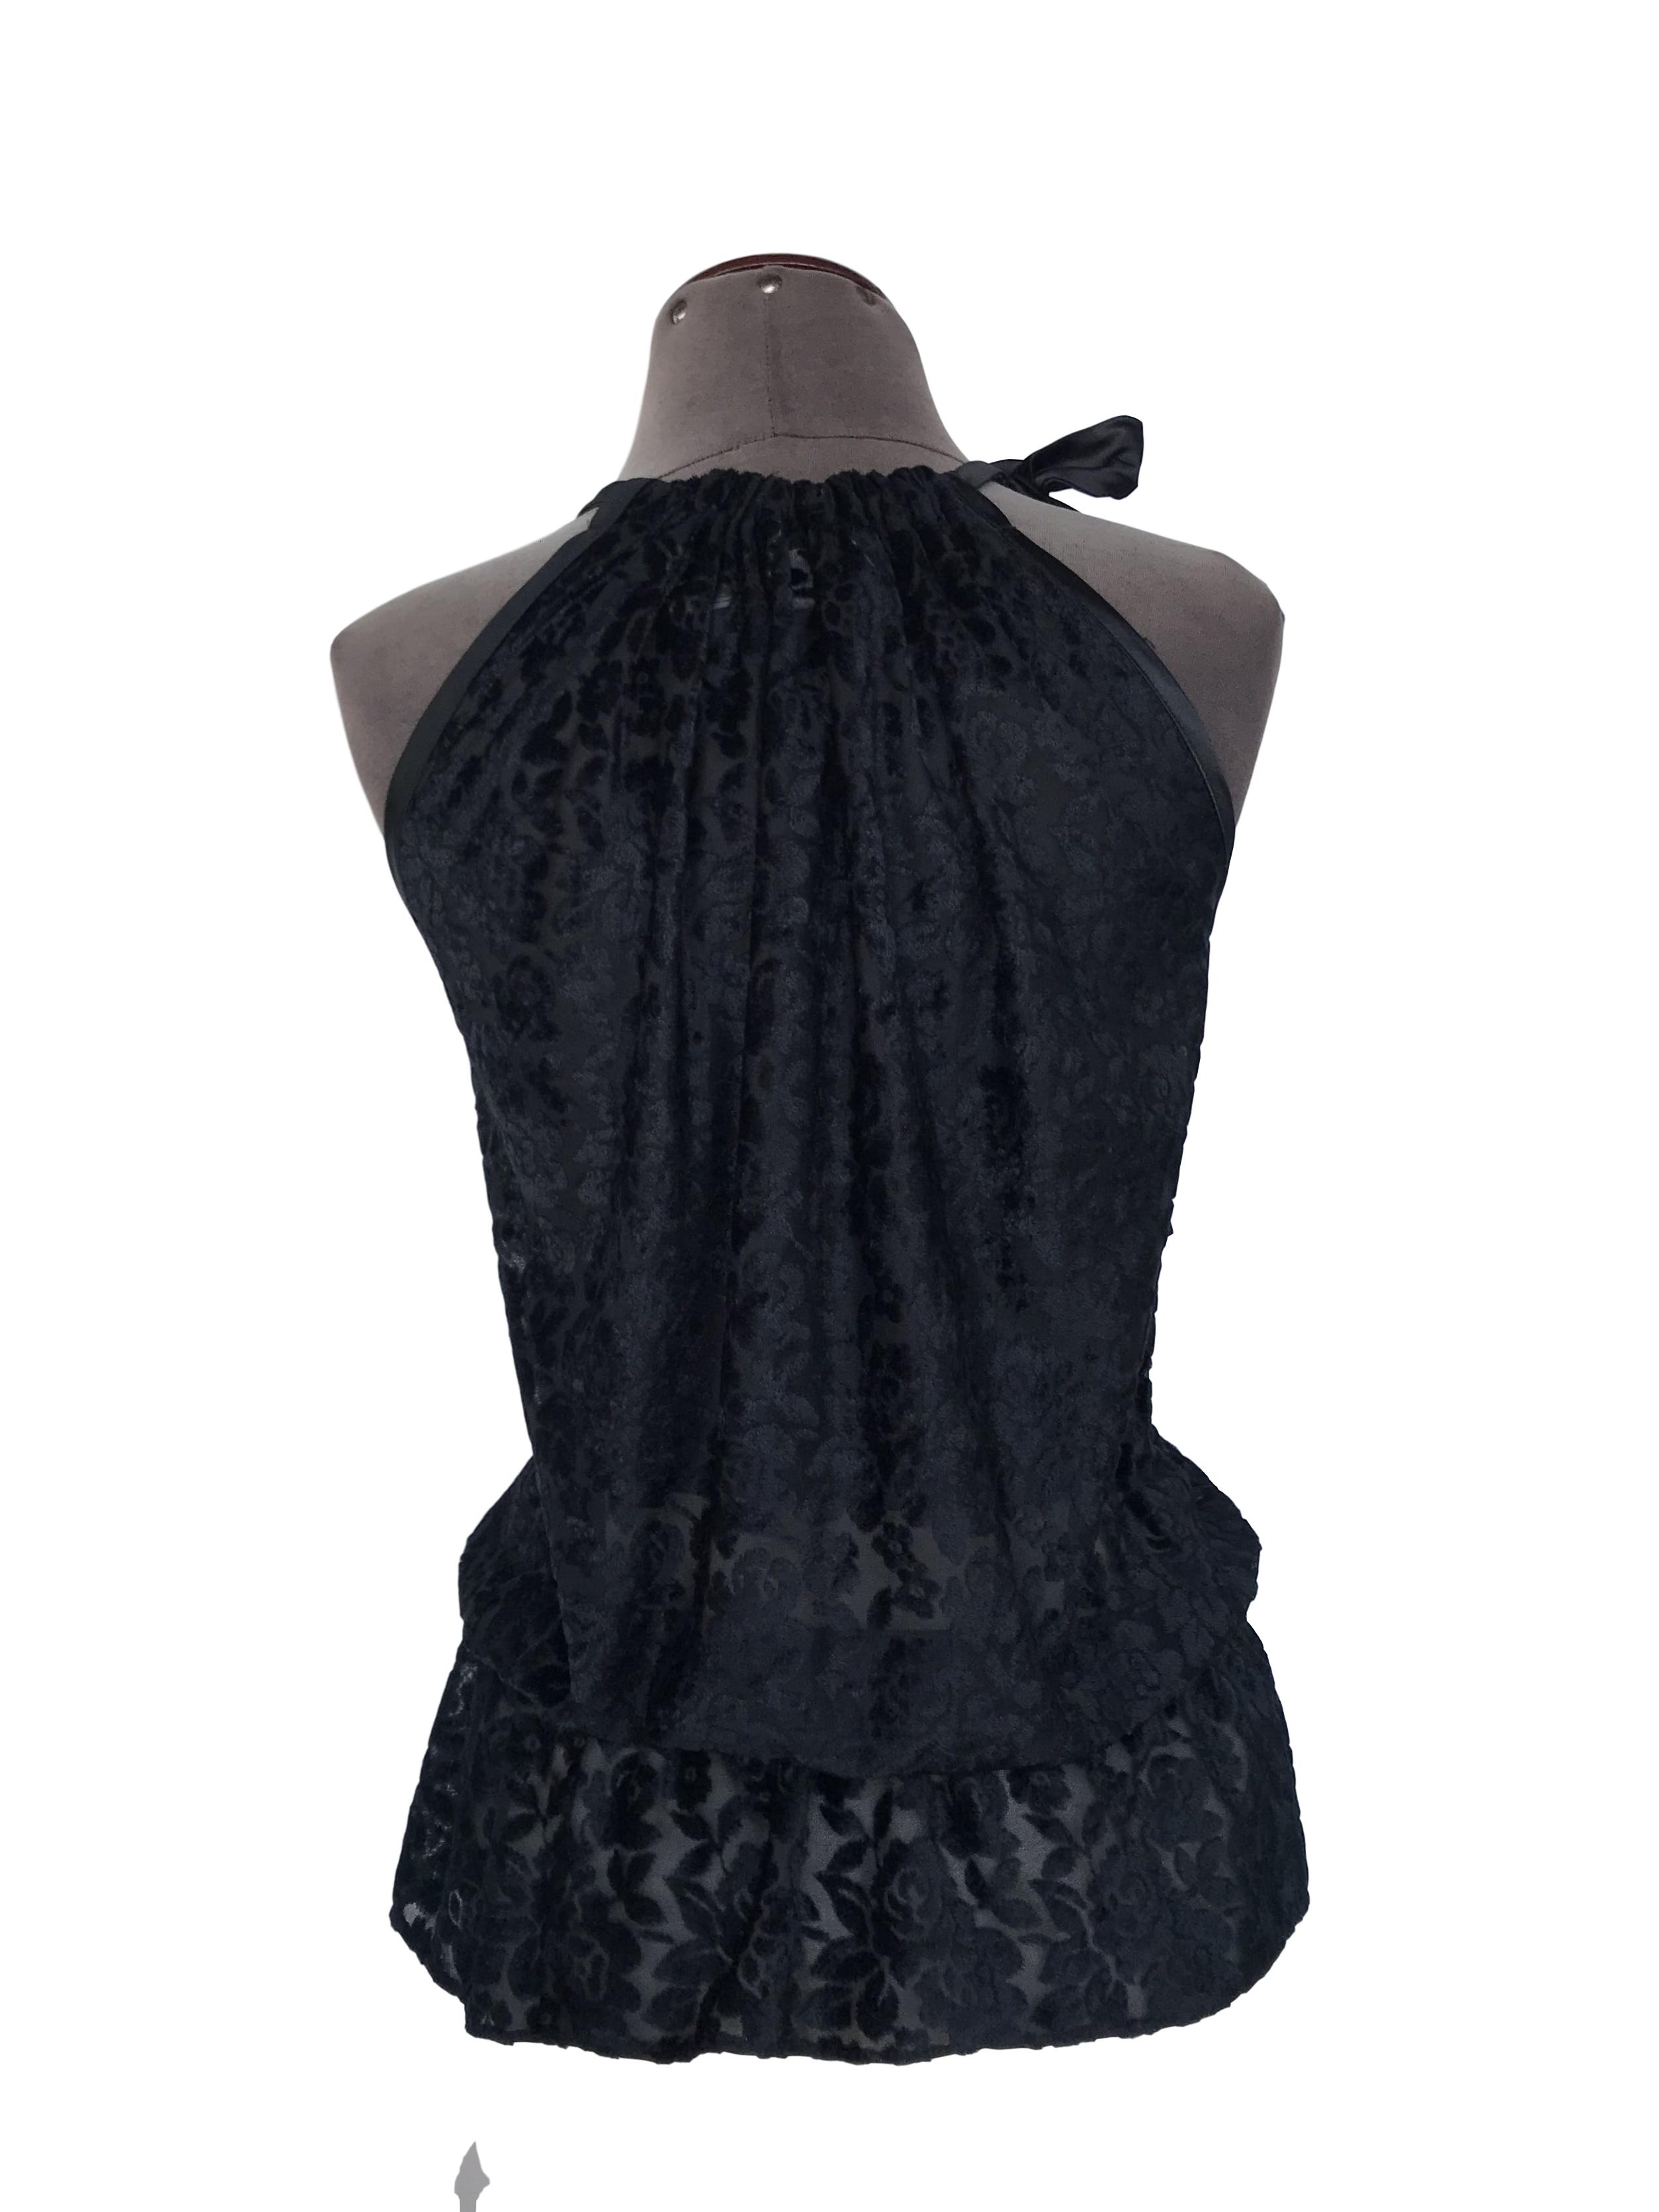 Blusa Cats Atelier de tela tipo tul con relieve de flores de plush negro, volante en el pecho, elástico en la cintura y lazo en el cuello
Talla S